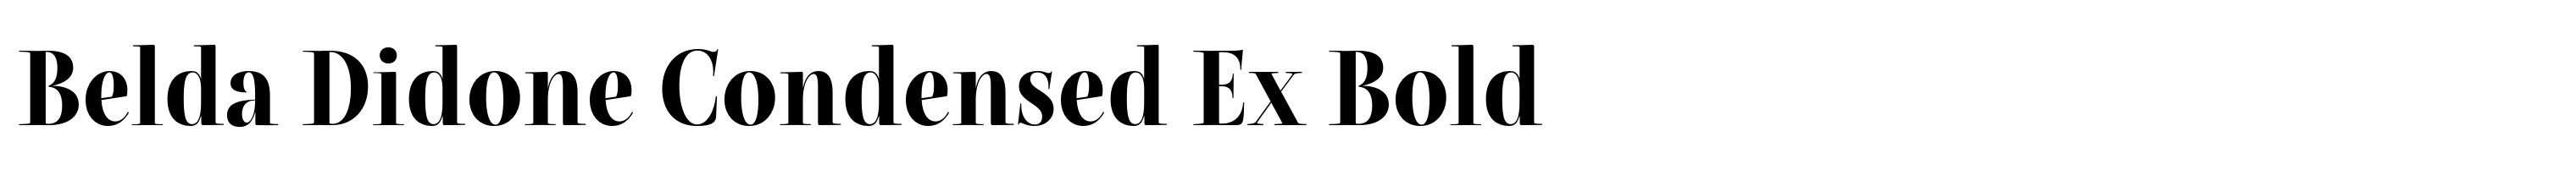 Belda Didone Condensed Ex Bold